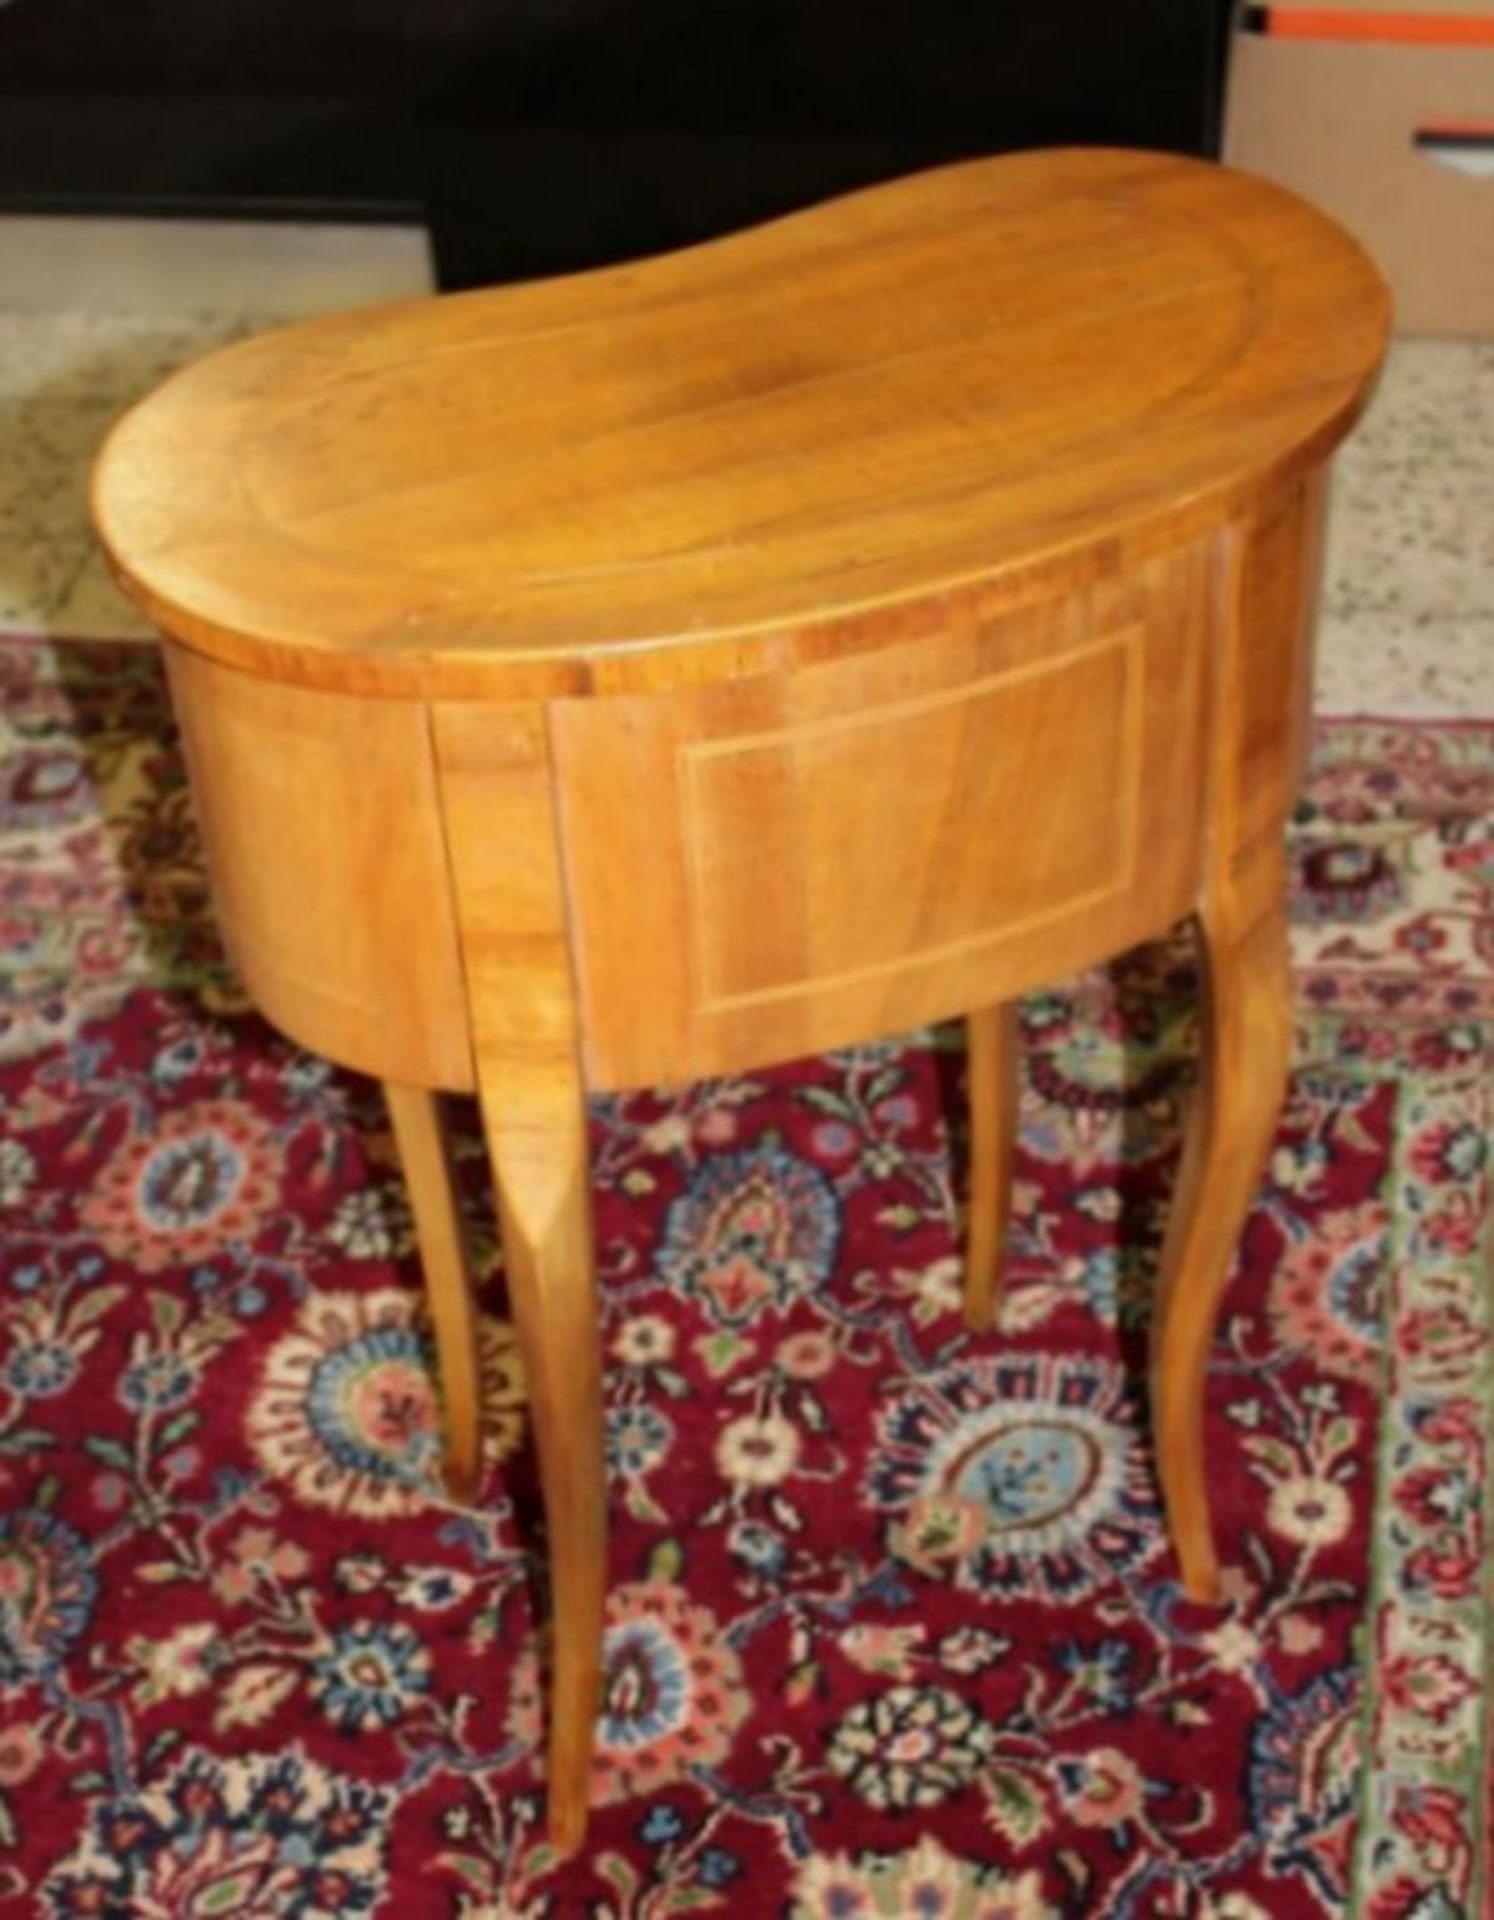 Beistell-Tisch, Nierenform, älter, Fadenintarsien, helles Holz, 2 Schübe, geschwungene Beine, H-65cm - Bild 3 aus 3